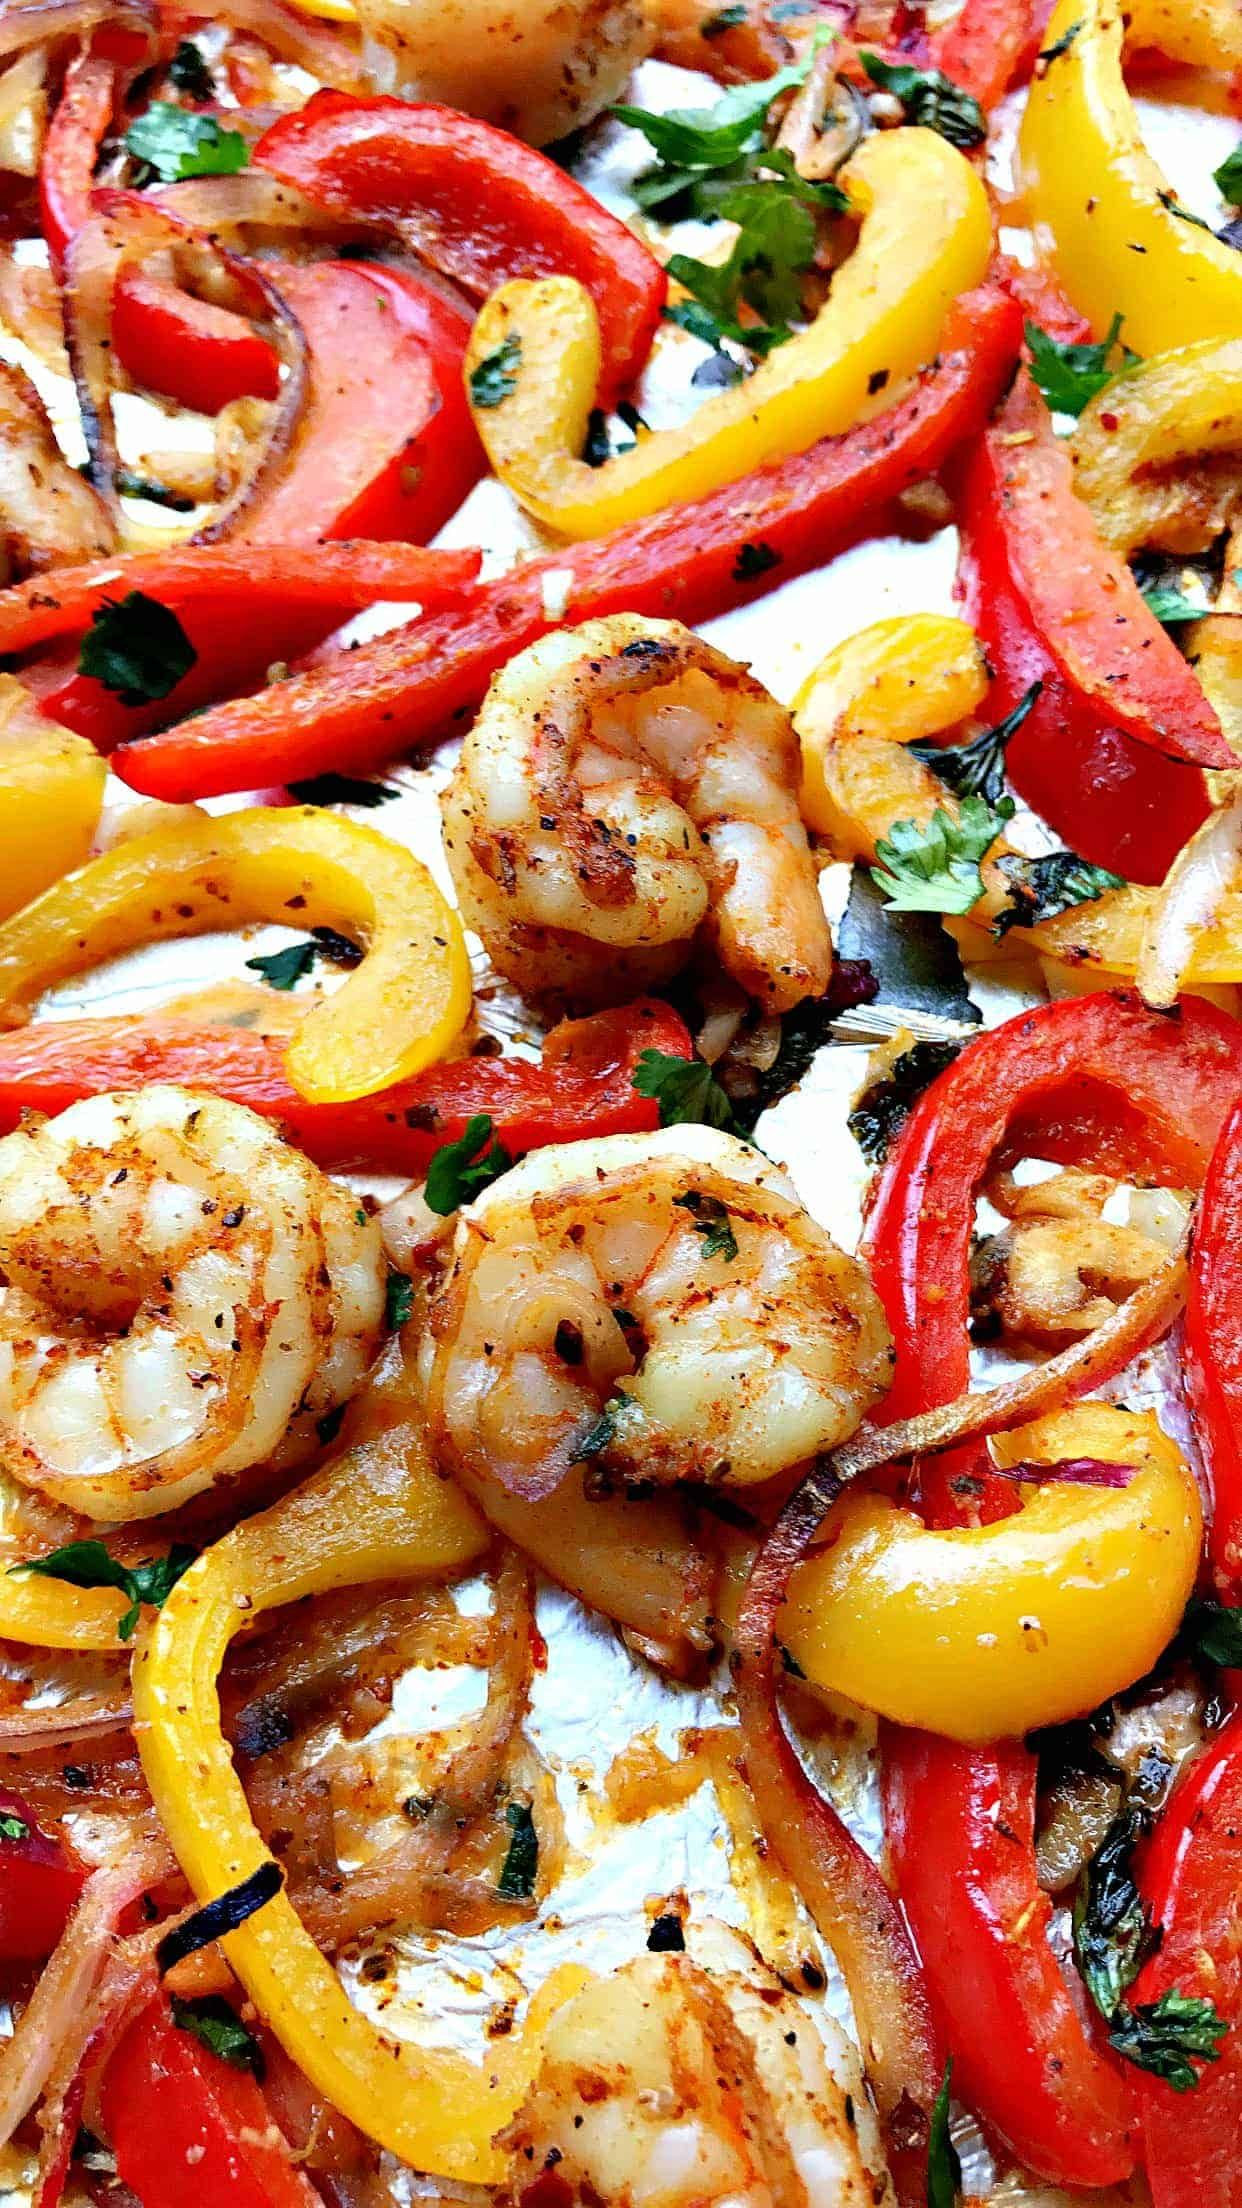 Shrimp Fajitas Calories Best Of 20 Minute Low Carb E Sheet Pan Shrimp Fajitas